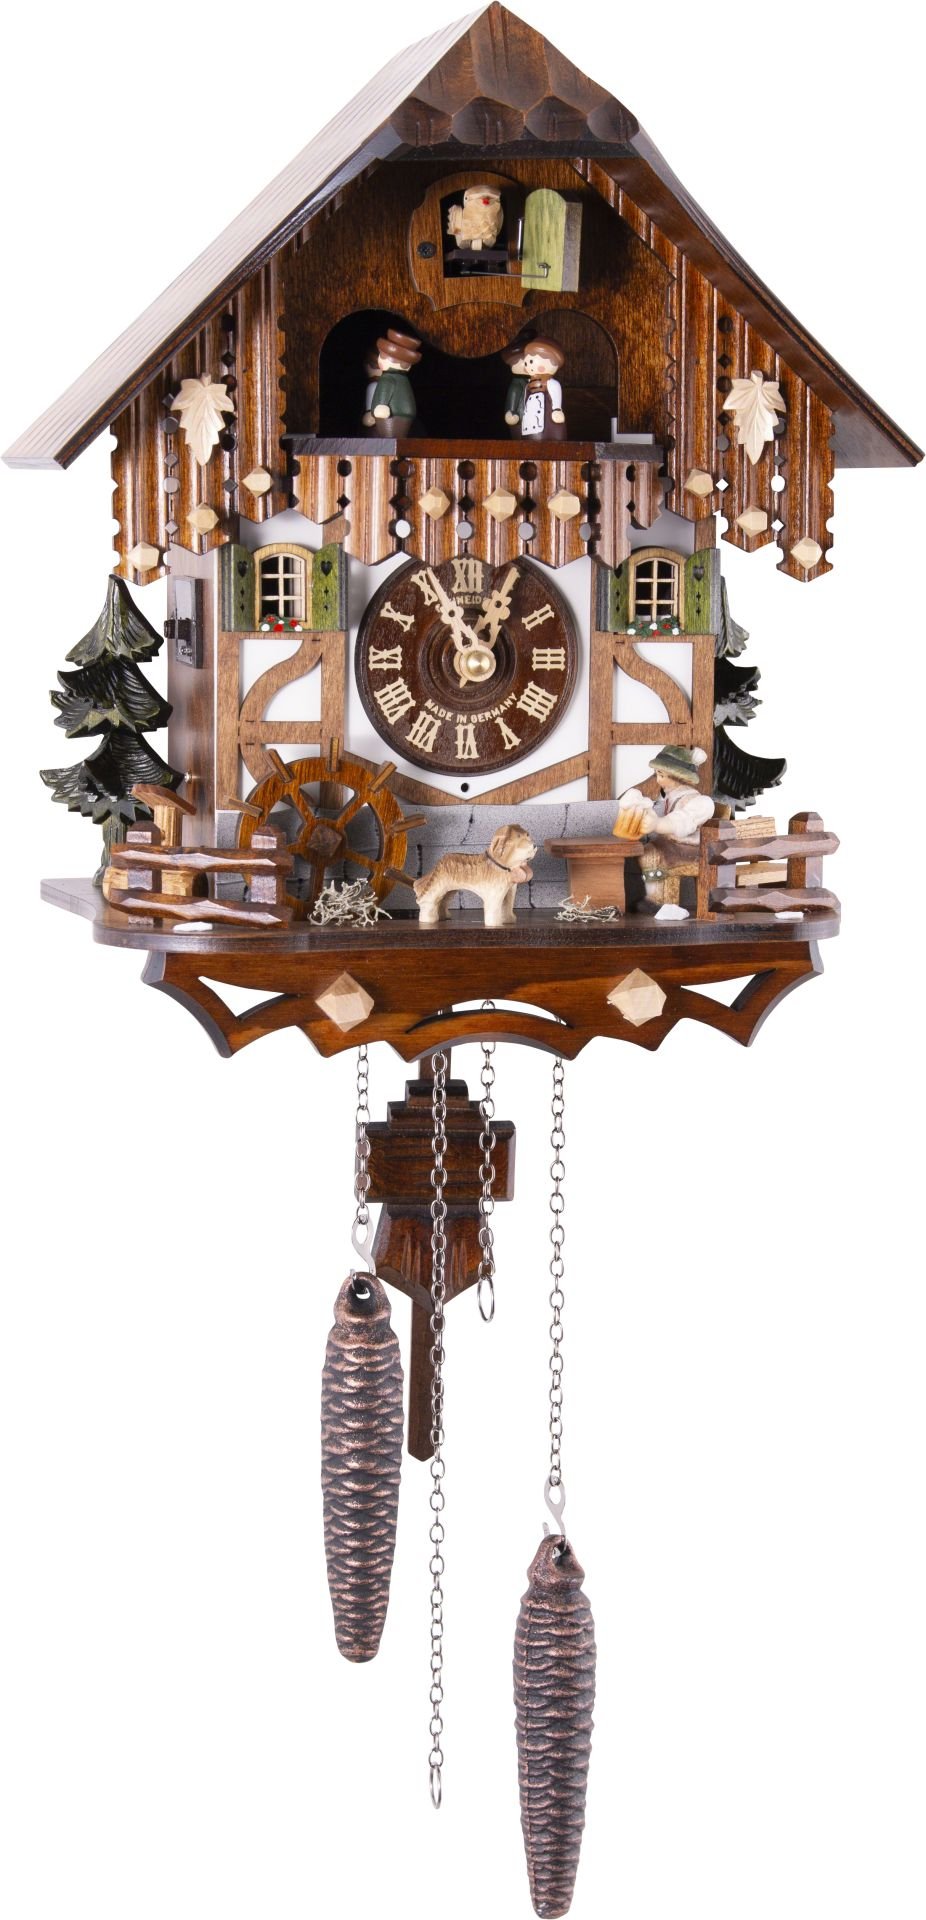 Kuckucksuhr Chalet-Stil Quarz-Uhrwerk 33cm von Anton Schneider